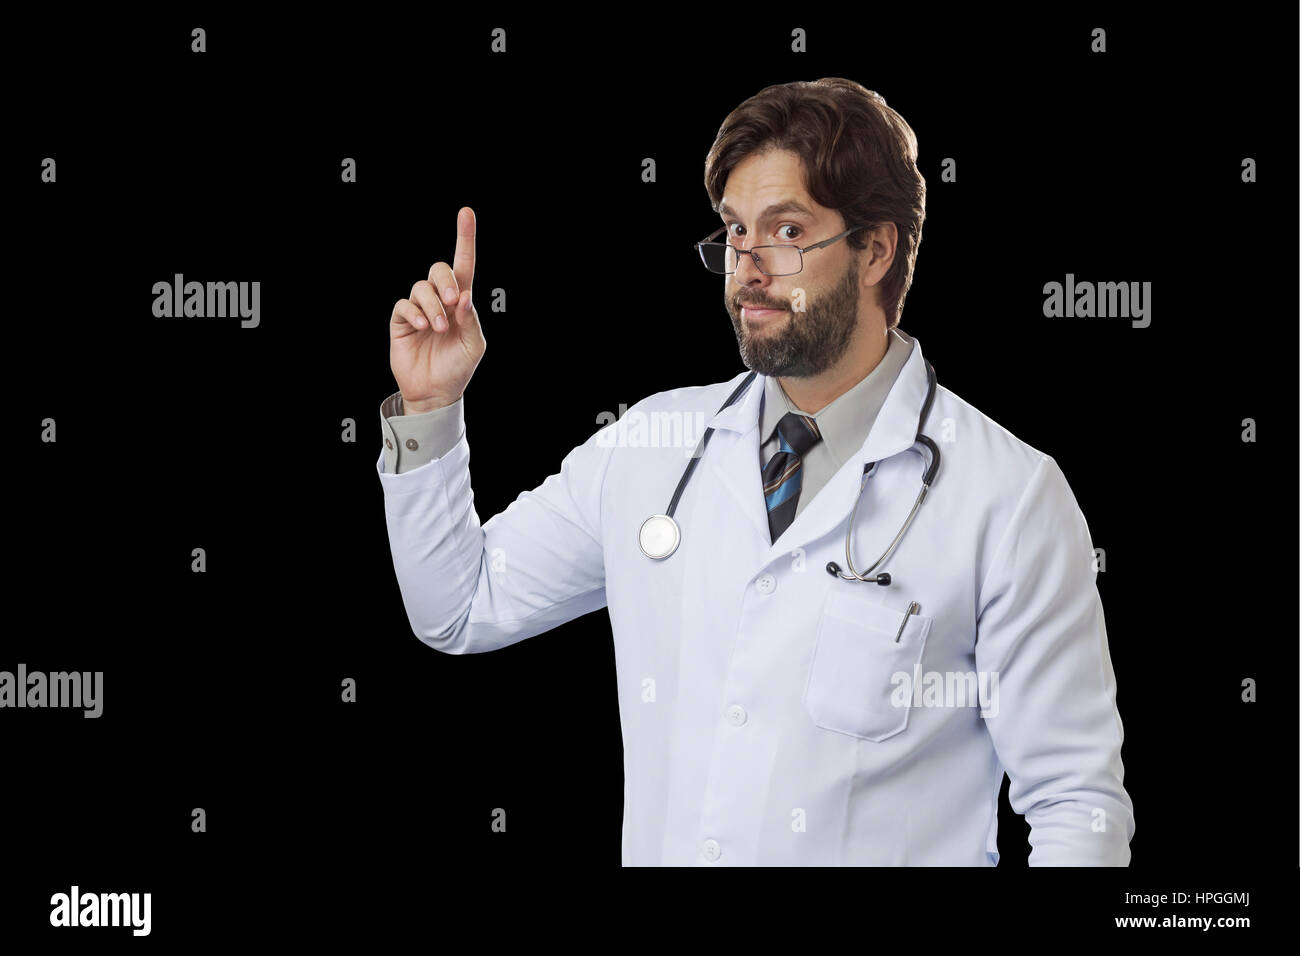 Männlichen Arzt deuten auf einem schwarzen Hintergrund. Stockfoto